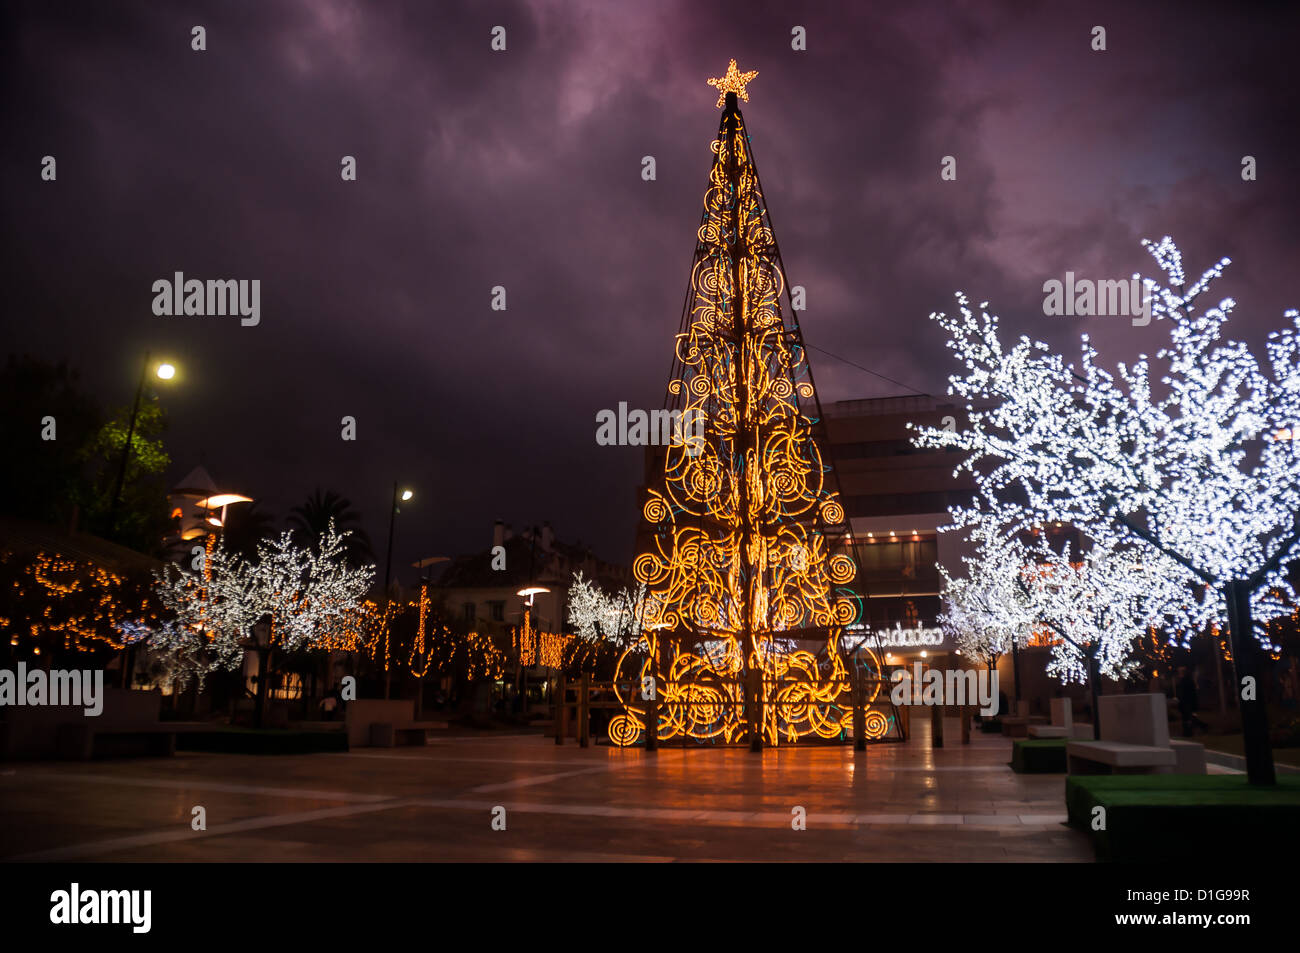 Natale in spagna immagini e fotografie stock ad alta risoluzione - Alamy